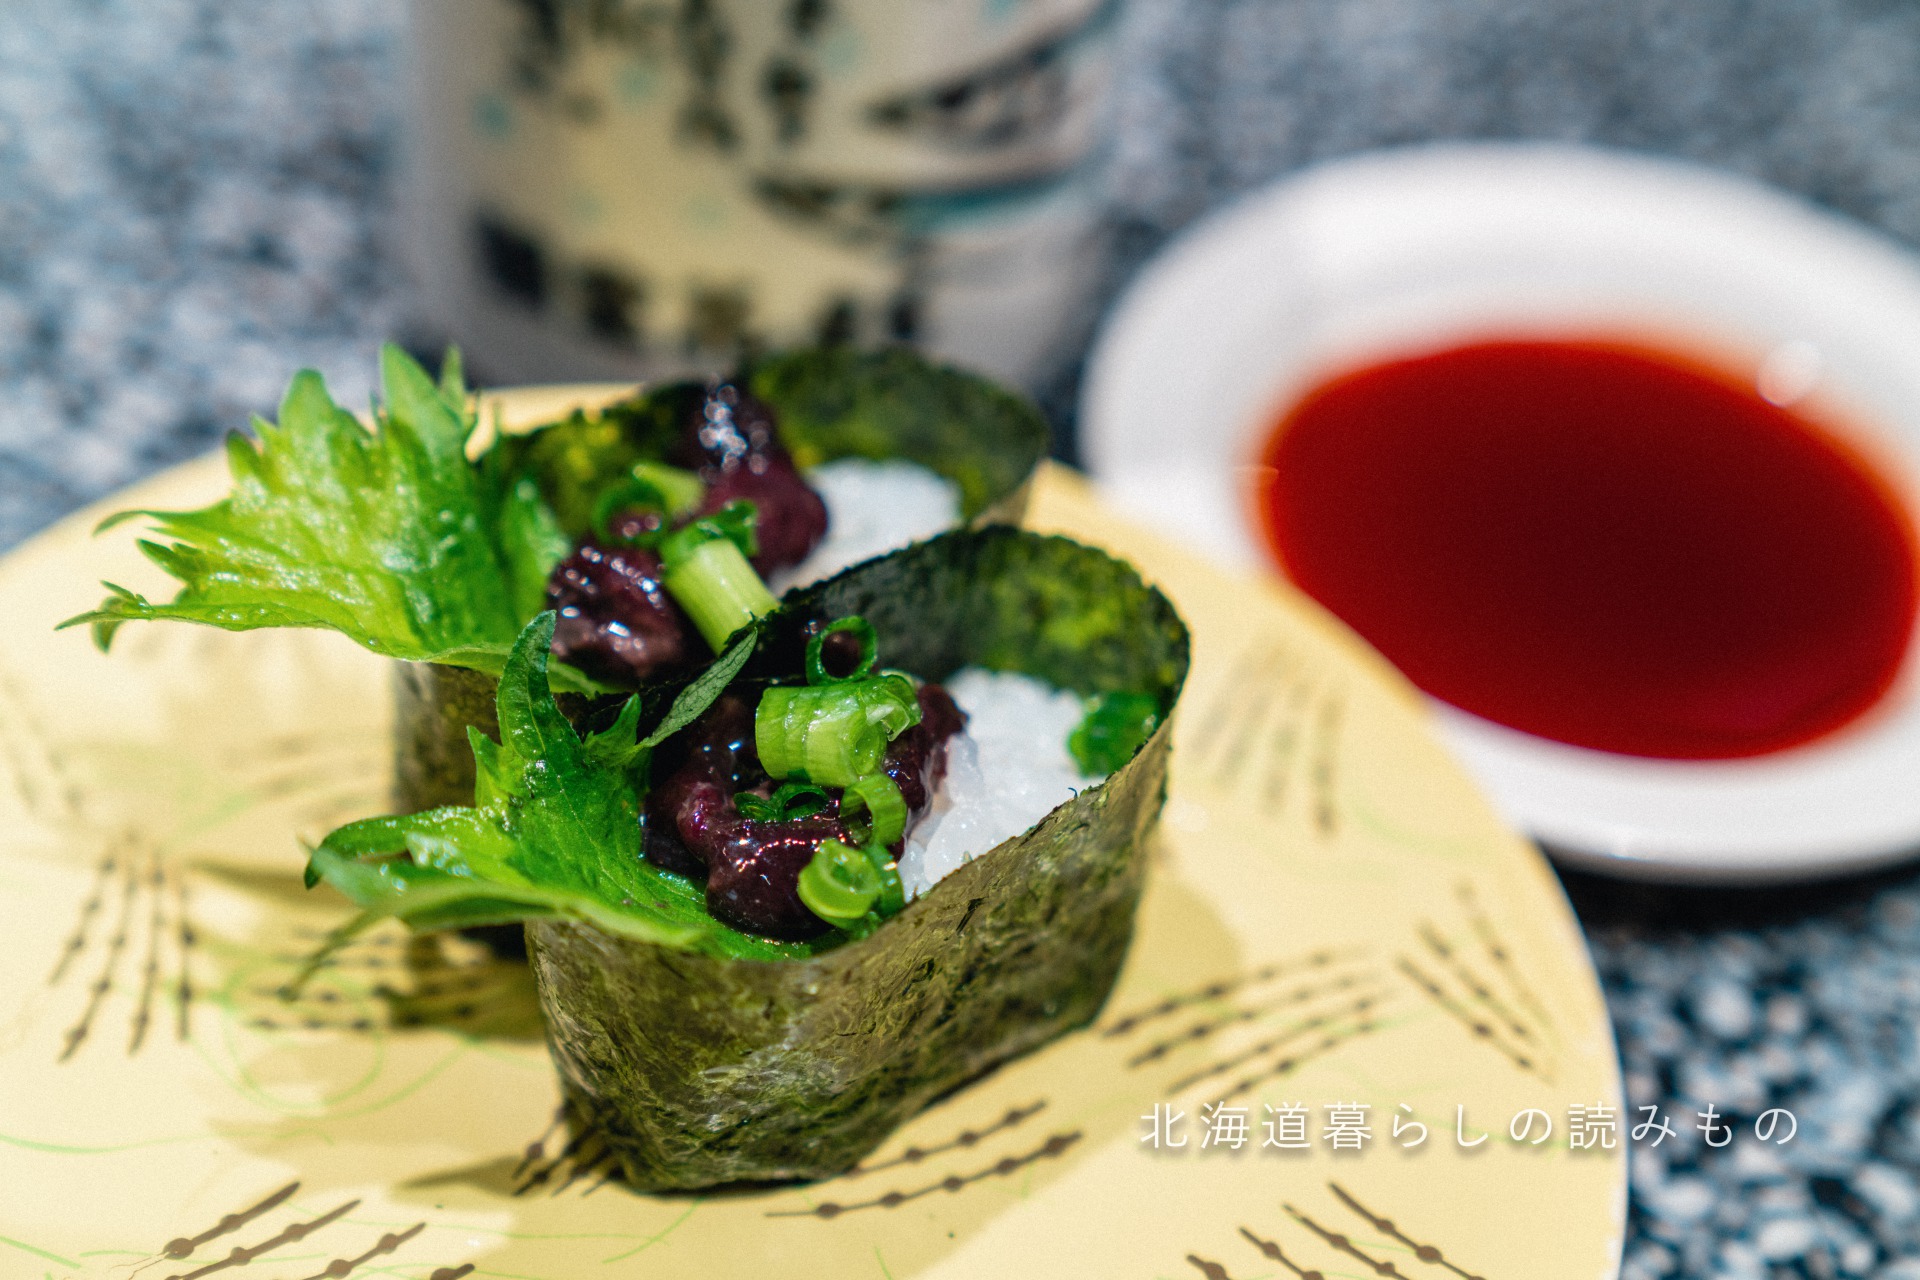 迴轉壽司根室花丸的菜單上的「咸鮭魚腎軍艦巻（阿伊努料理）」